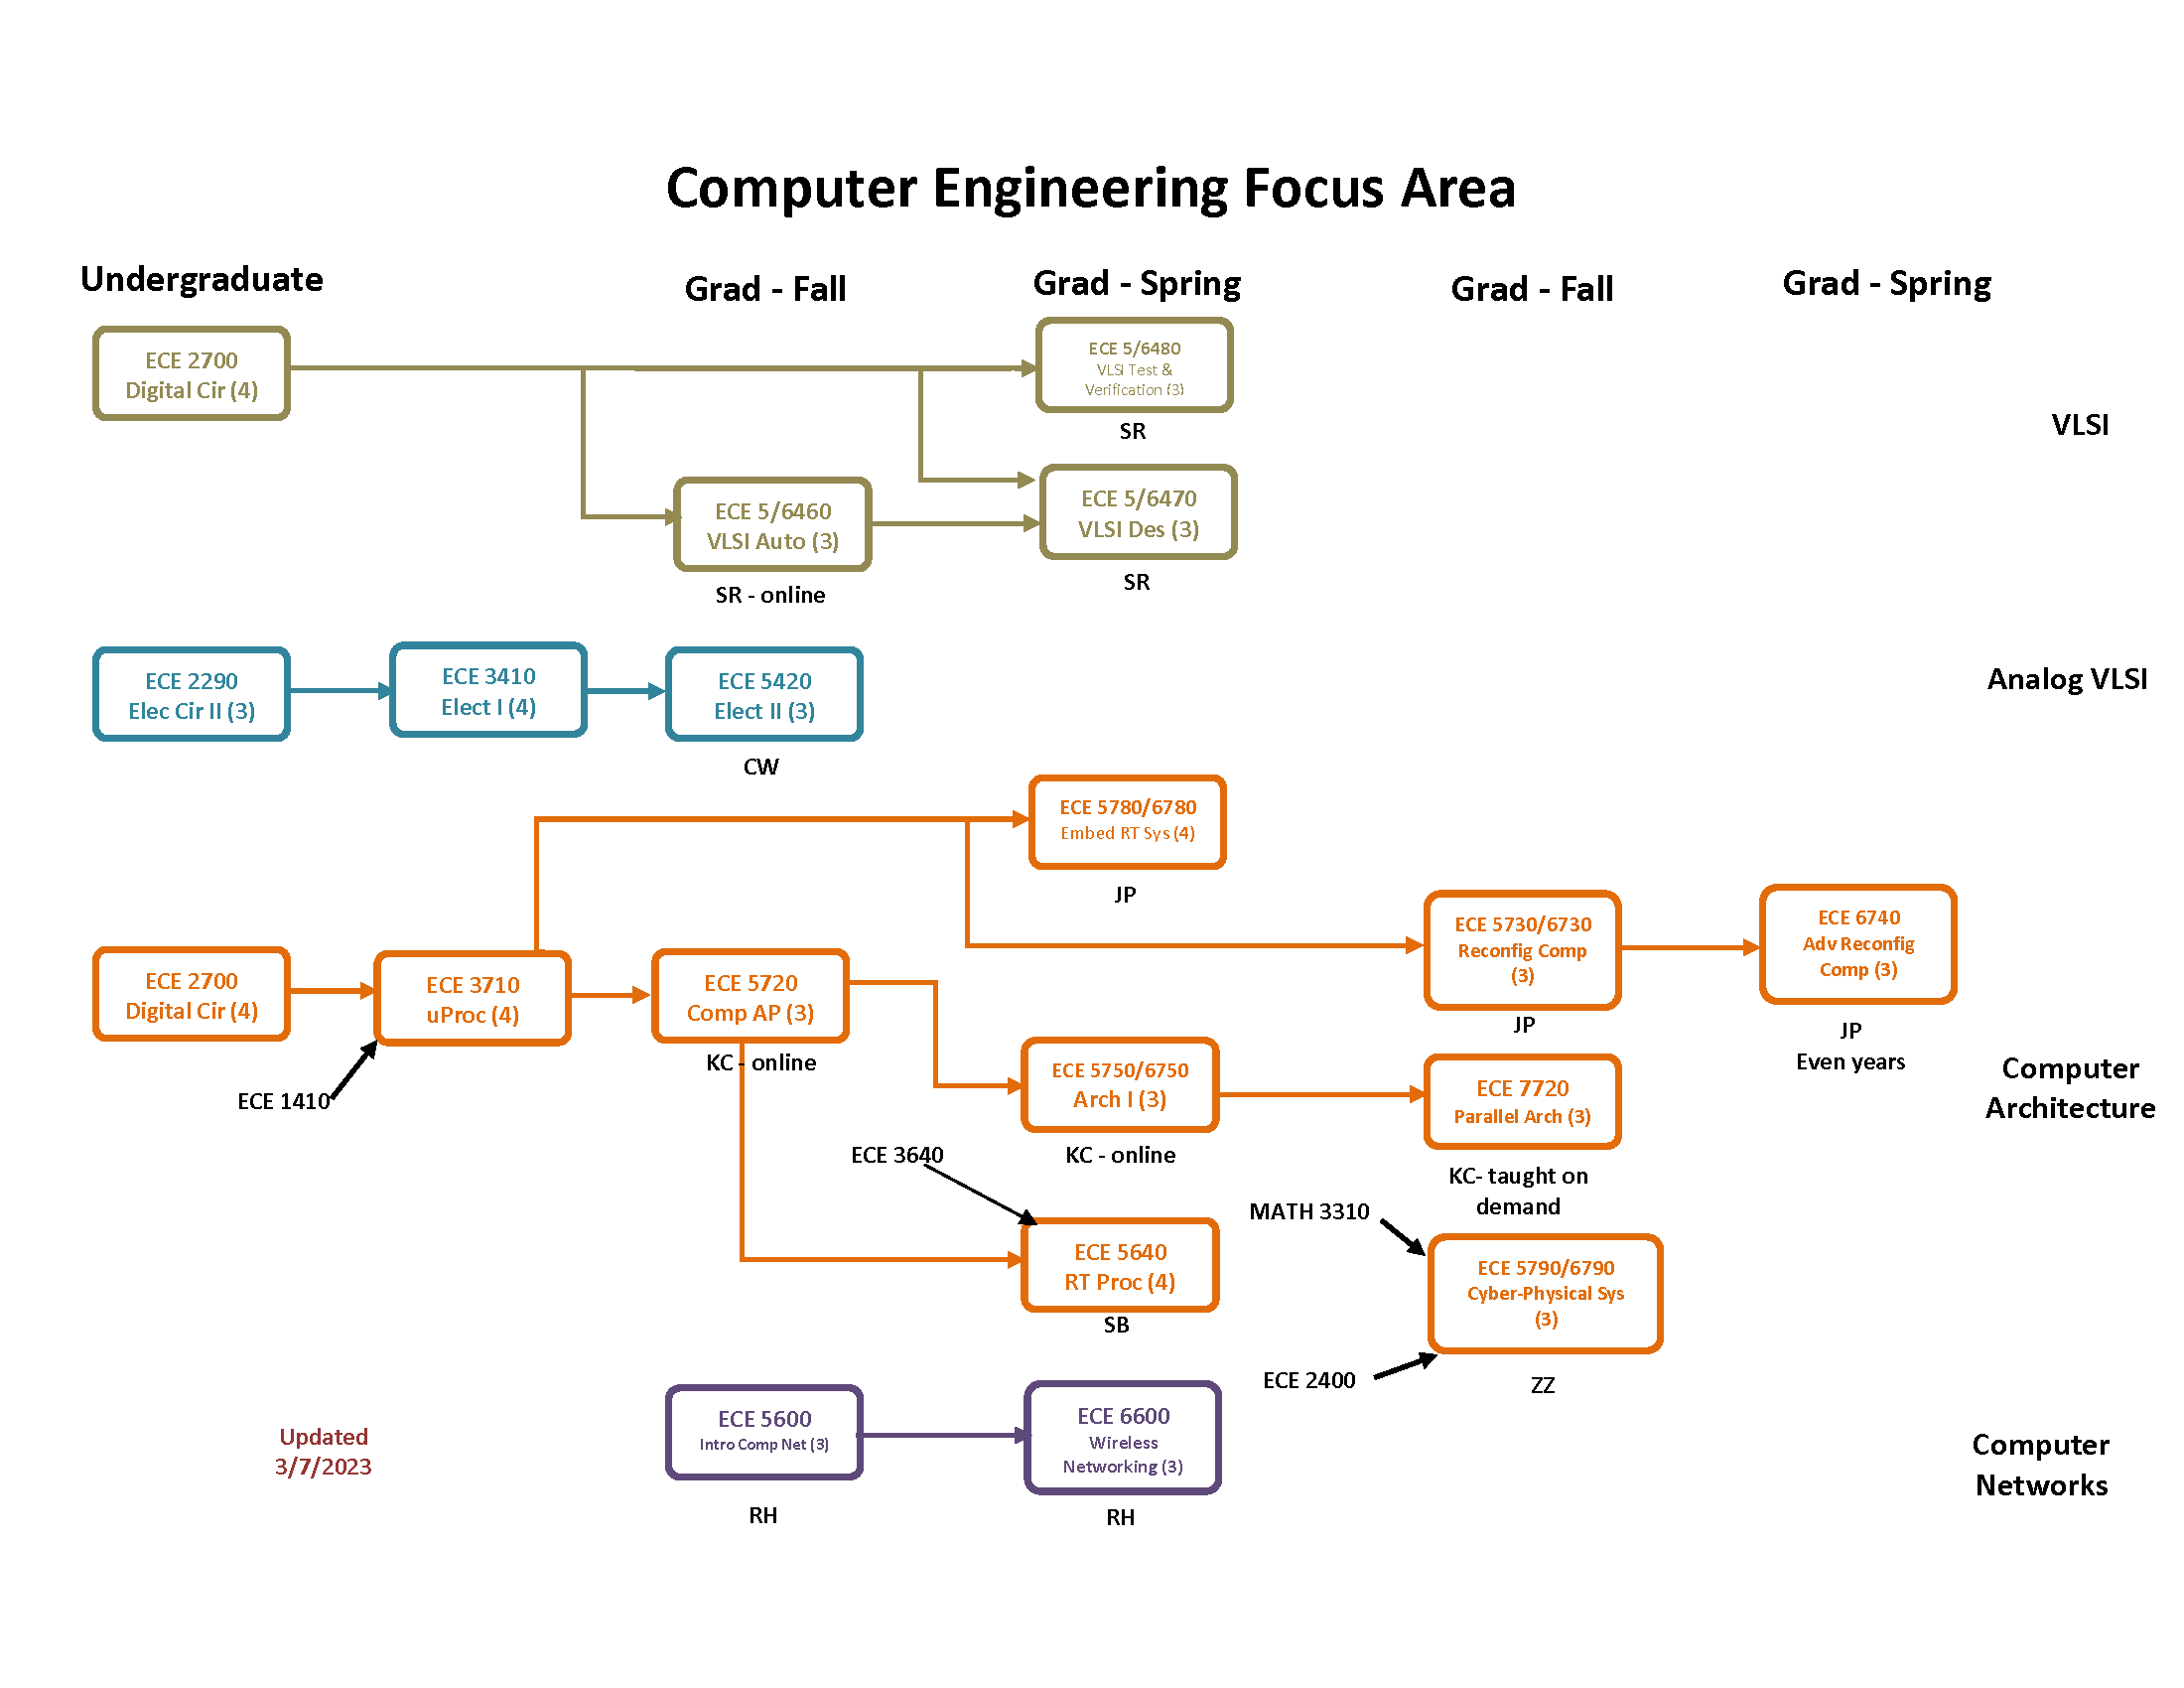 Computer Engineering Focus Area flow chart